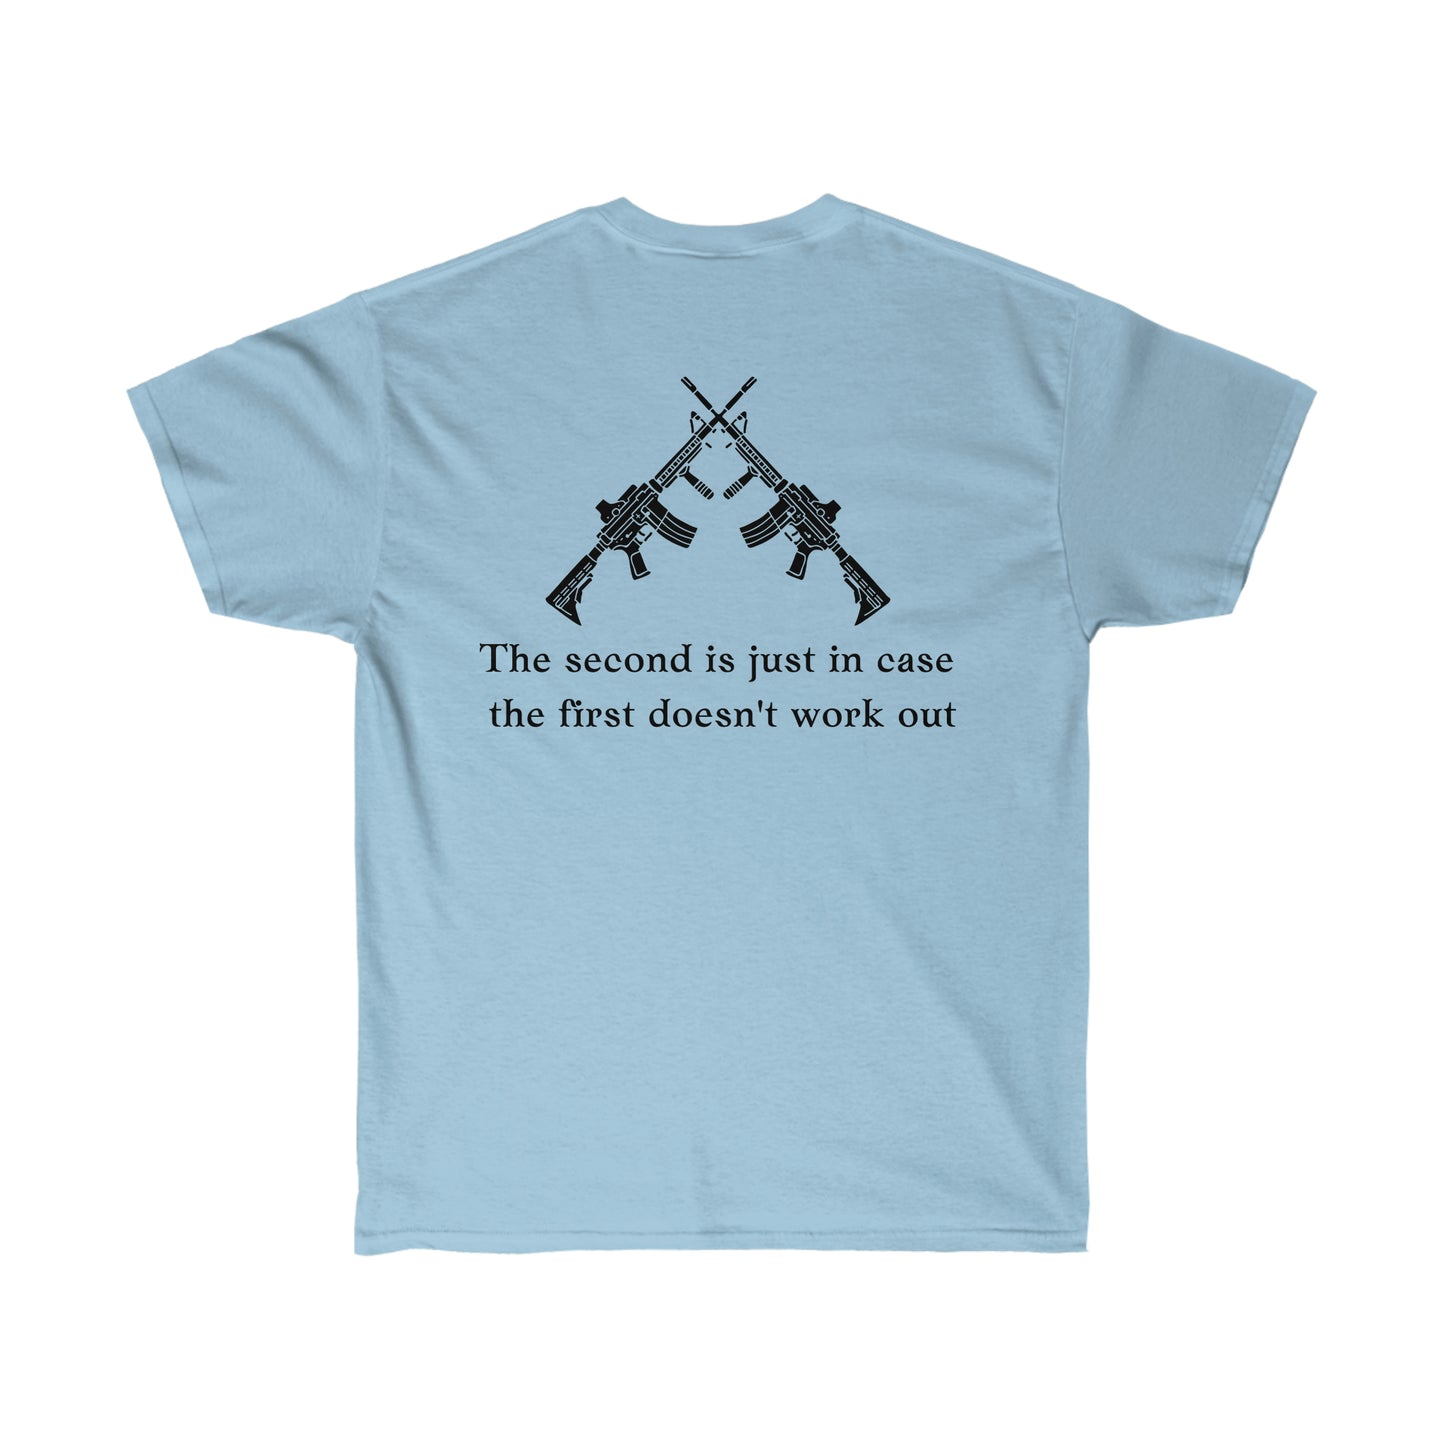 First and Second Amendment T-shirt